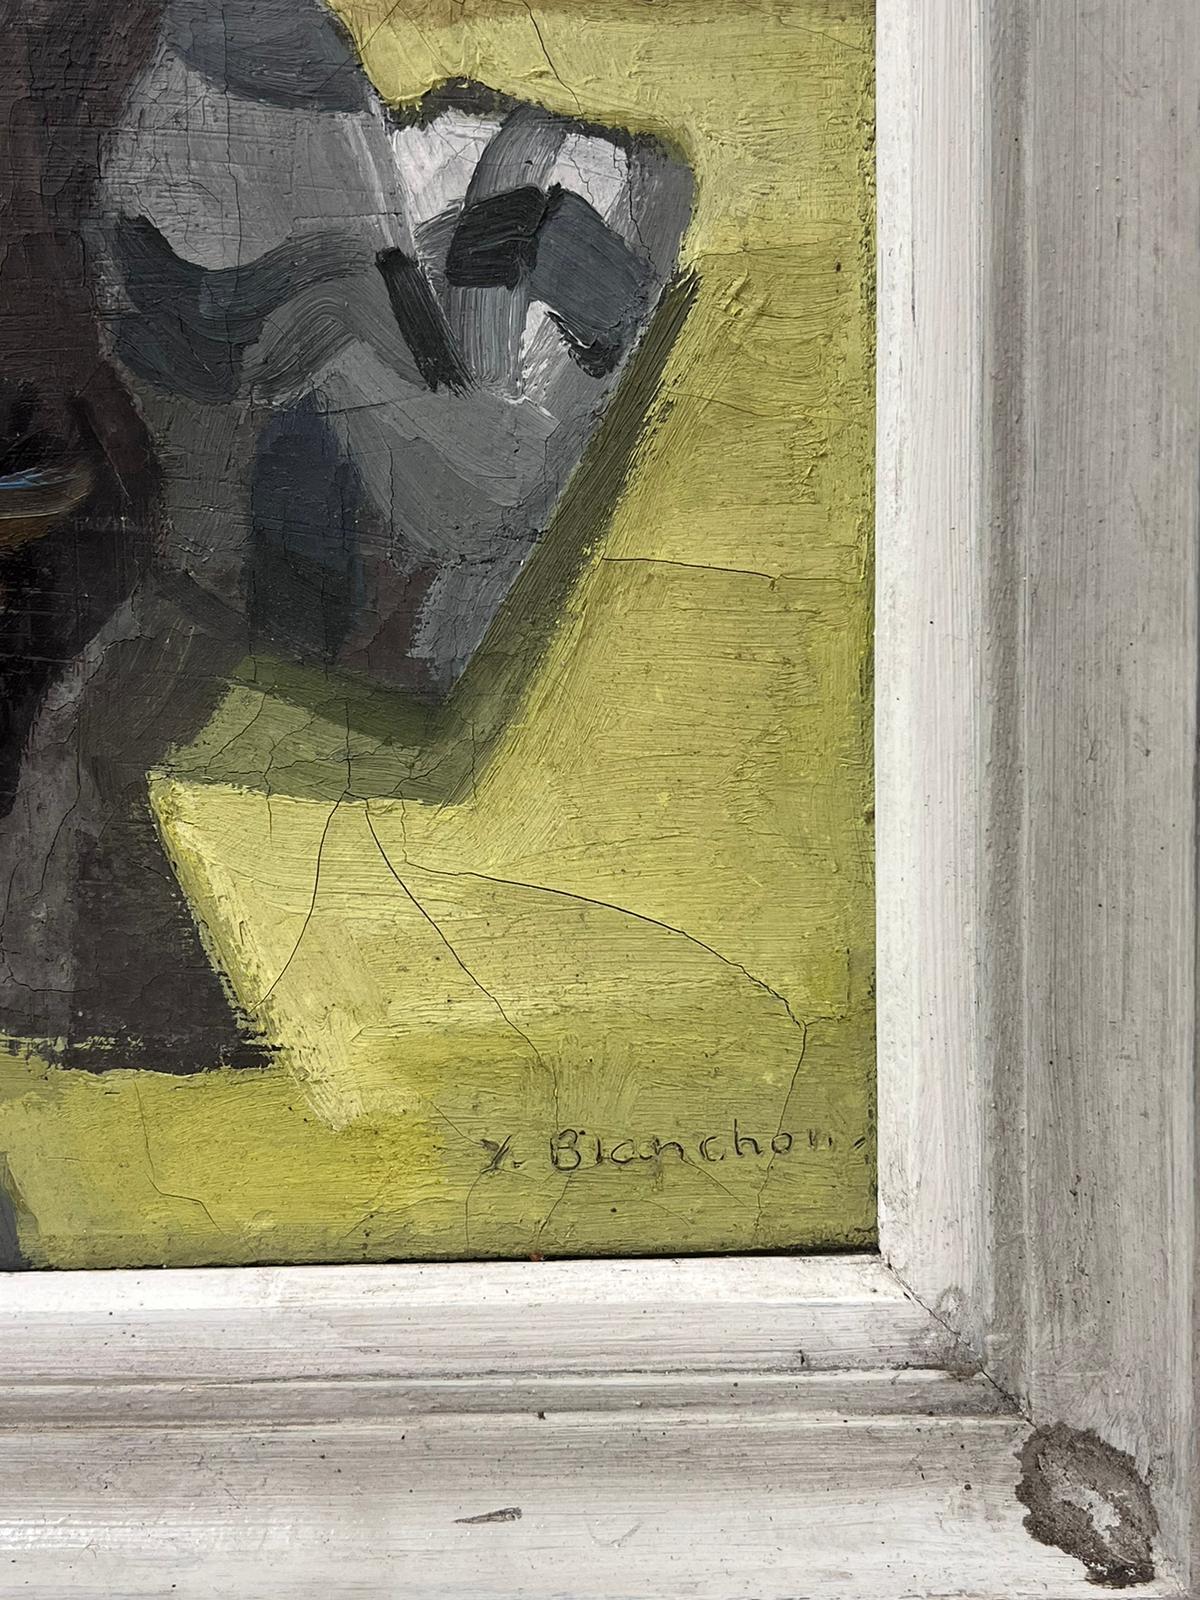 Sonnenblumen
signiert von Y. Blanchon, französischer Impressionist der 1950er Jahre 
Öl auf Leinwand, gerahmt
Gerahmt: 20,5 x 17 Zoll
Leinwand: 16 x 13 Zoll
Provenienz: aus einer großen Privatsammlung dieses Künstlers in Nordfrankreich
Zustand: